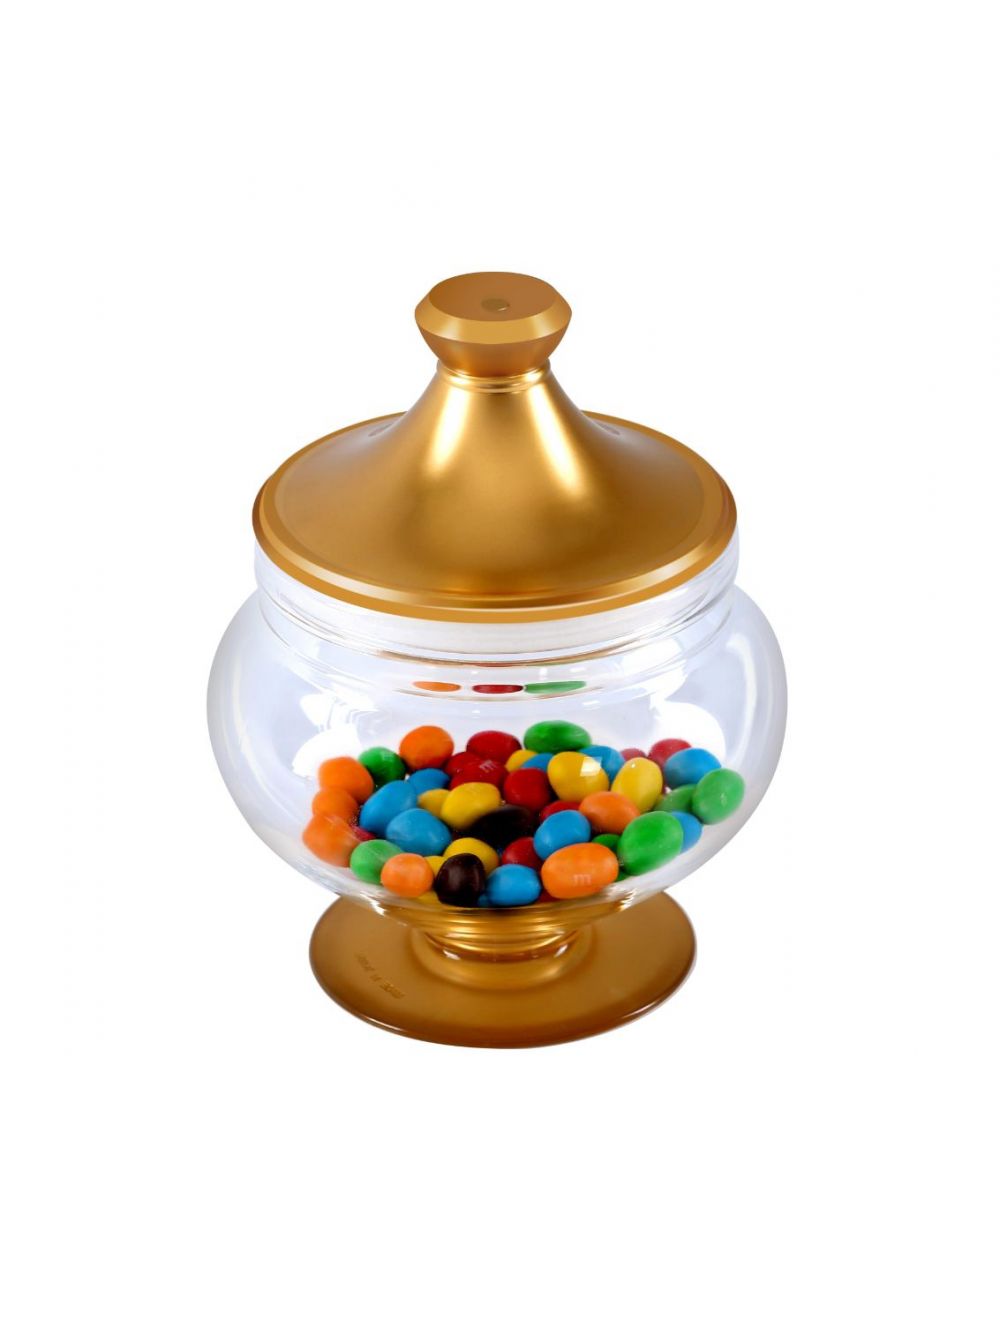 Royalford RF9516 17x24 CM Acrylic Candy Bowl